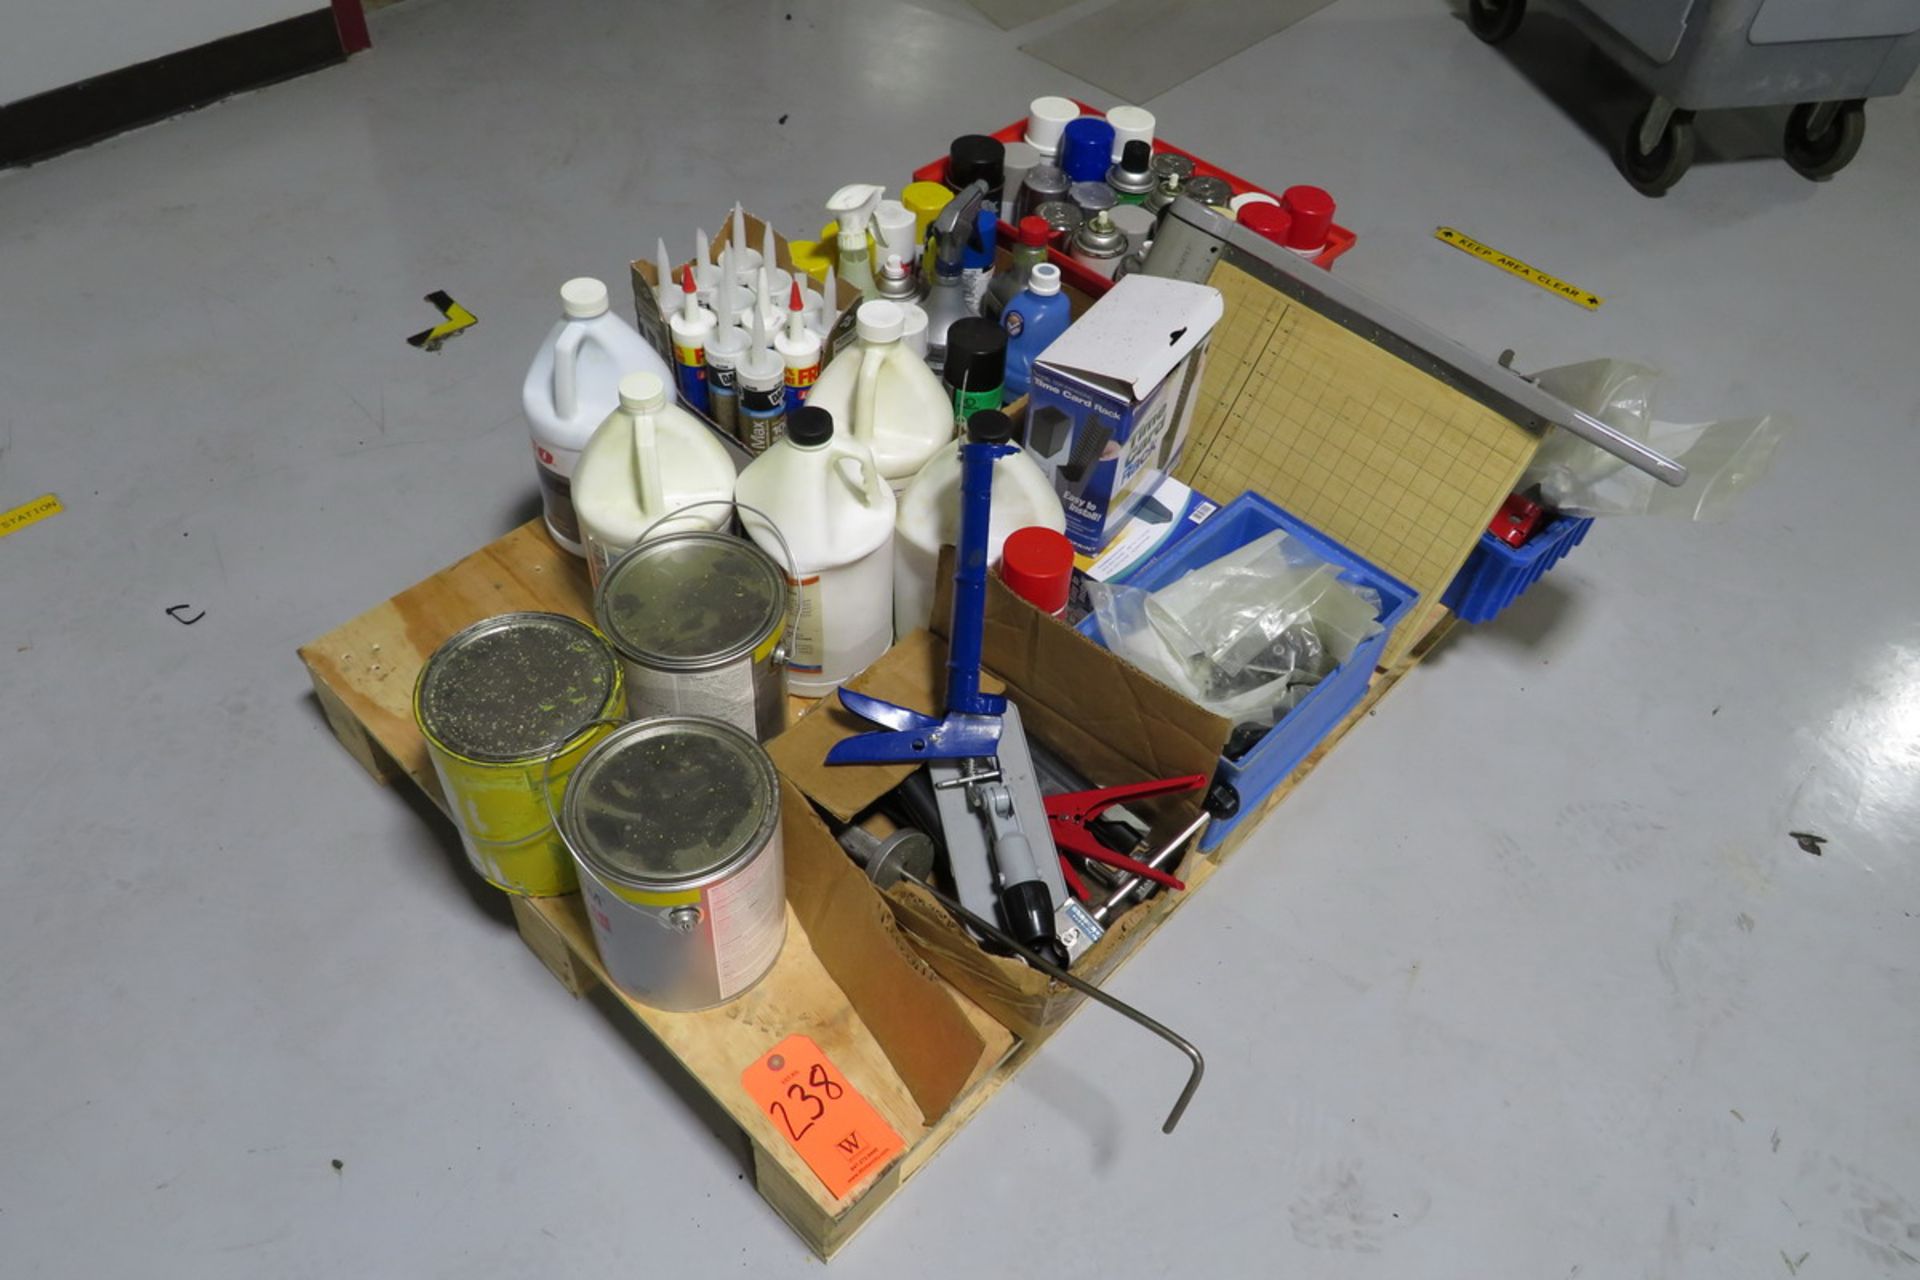 Lot - Pallets of Assorted Caulk Guns, Caulk, Spray Paint, Plastic Bins